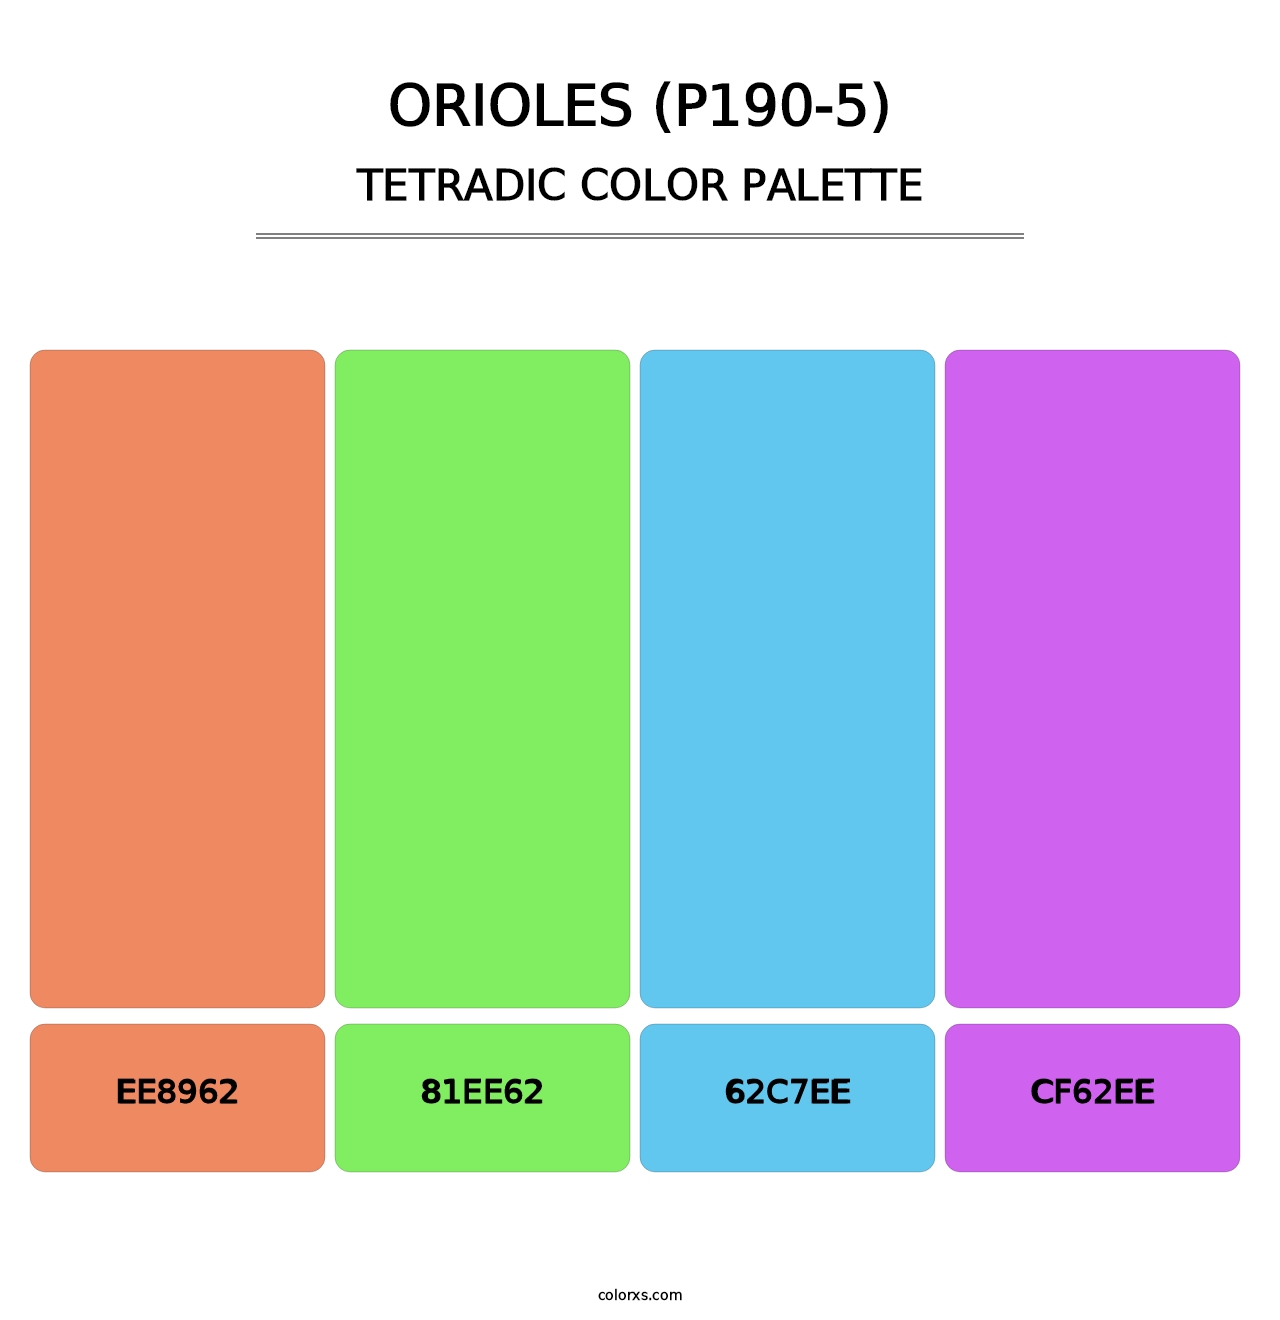 Orioles (P190-5) - Tetradic Color Palette